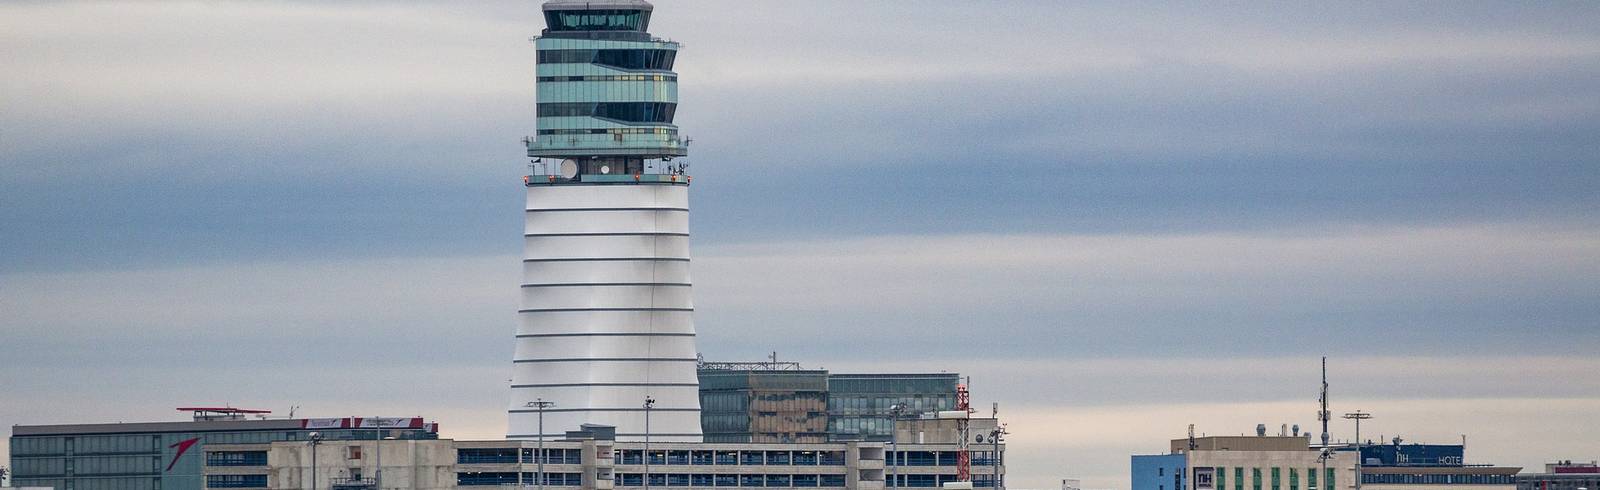 Flughafen Wien im Juni mit knapp einem Fünftel mehr Passagieren